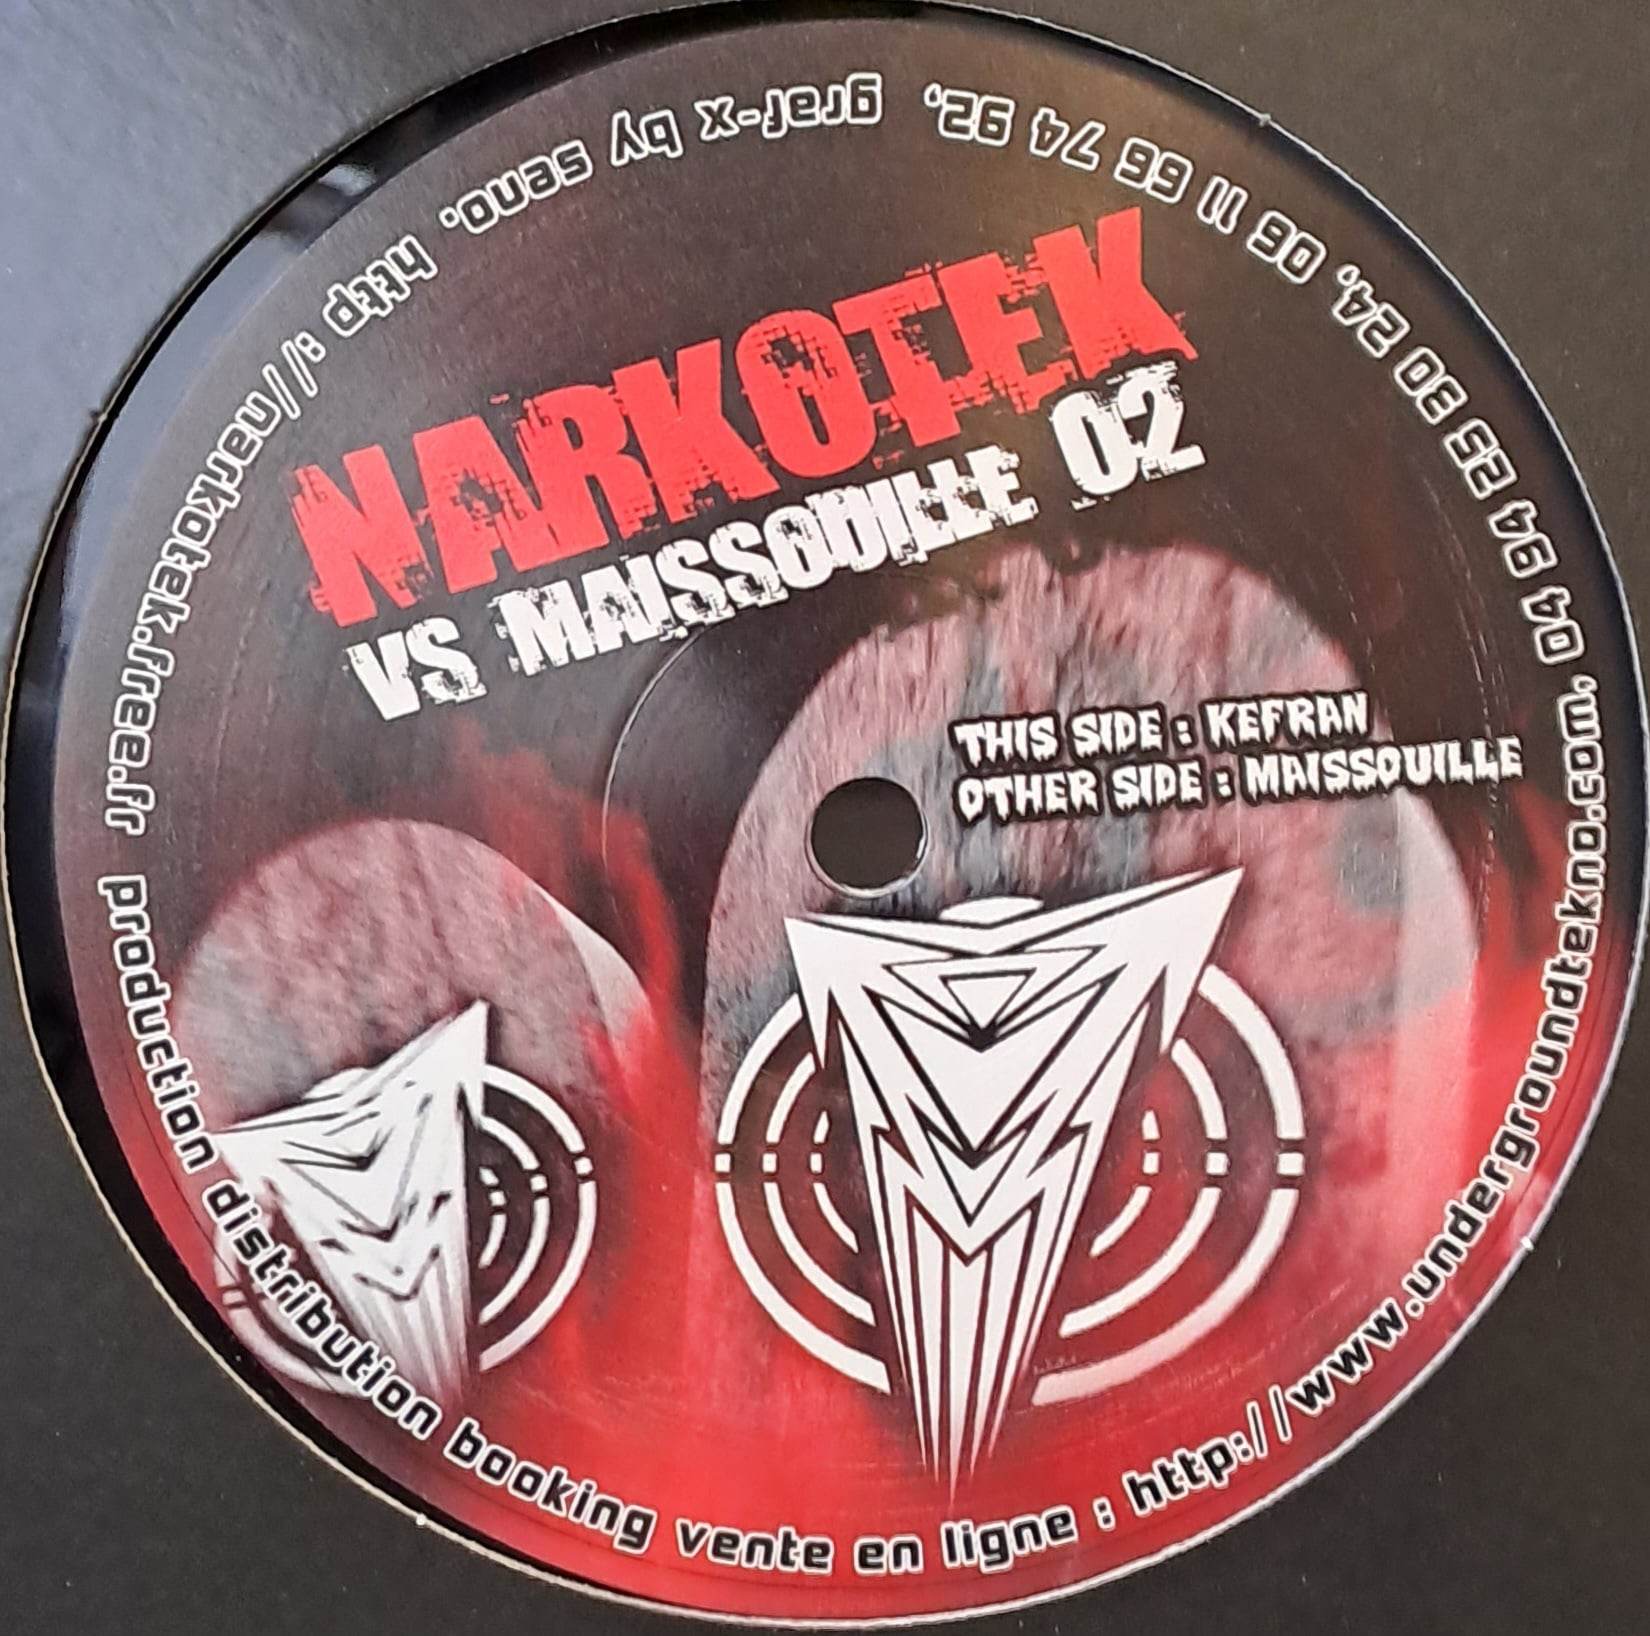 Narkotek Vs Maissouille 02 RP (toute dernière copie en stock) - vinyle freetekno